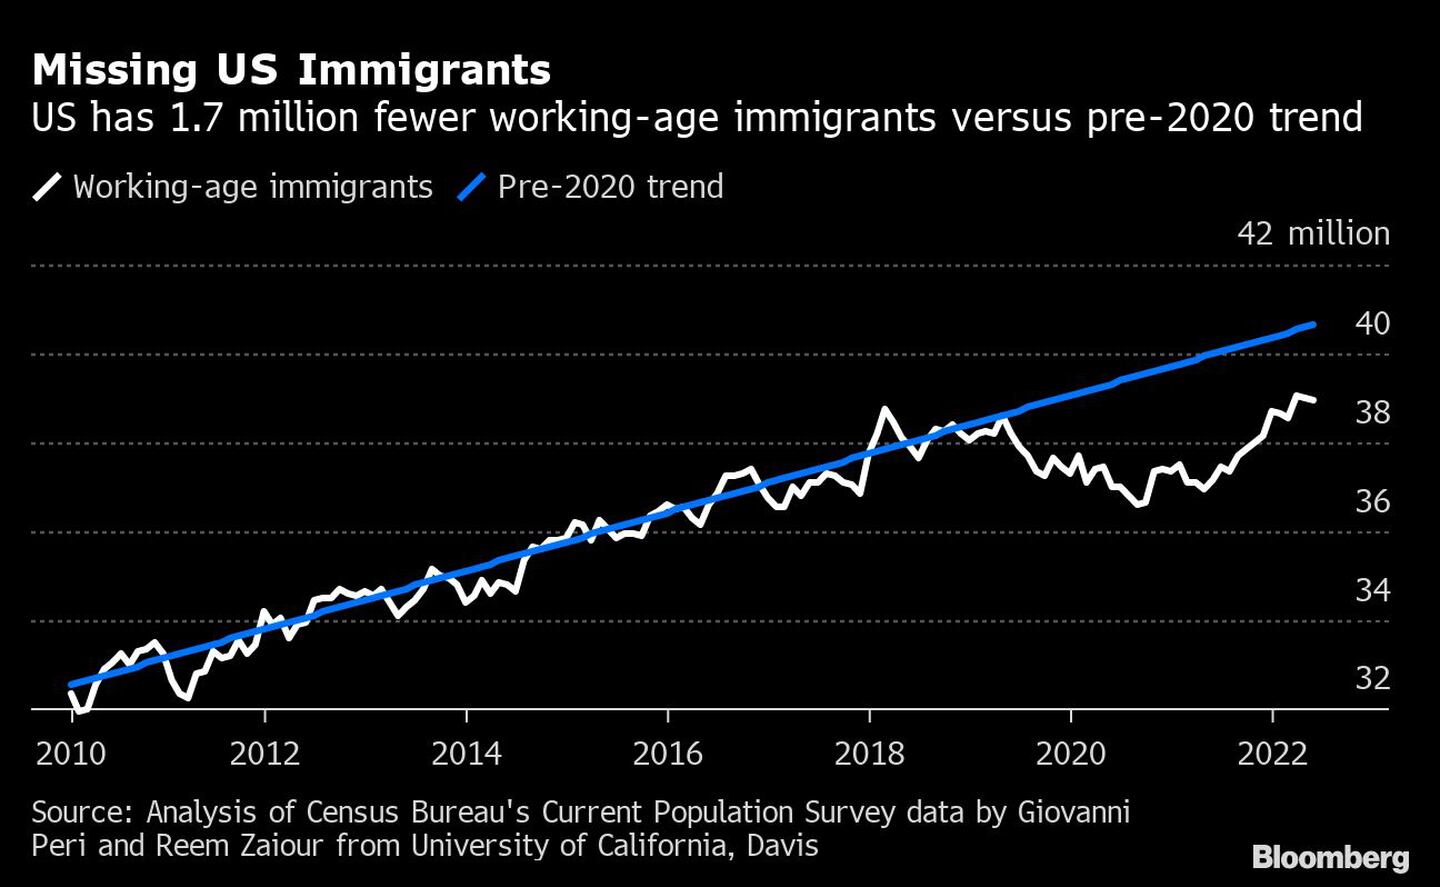 EE.UU. tiene 1,7 millones menos de inmigrantes en edad de trabajar frente a la tendencia anterior a 2020dfd